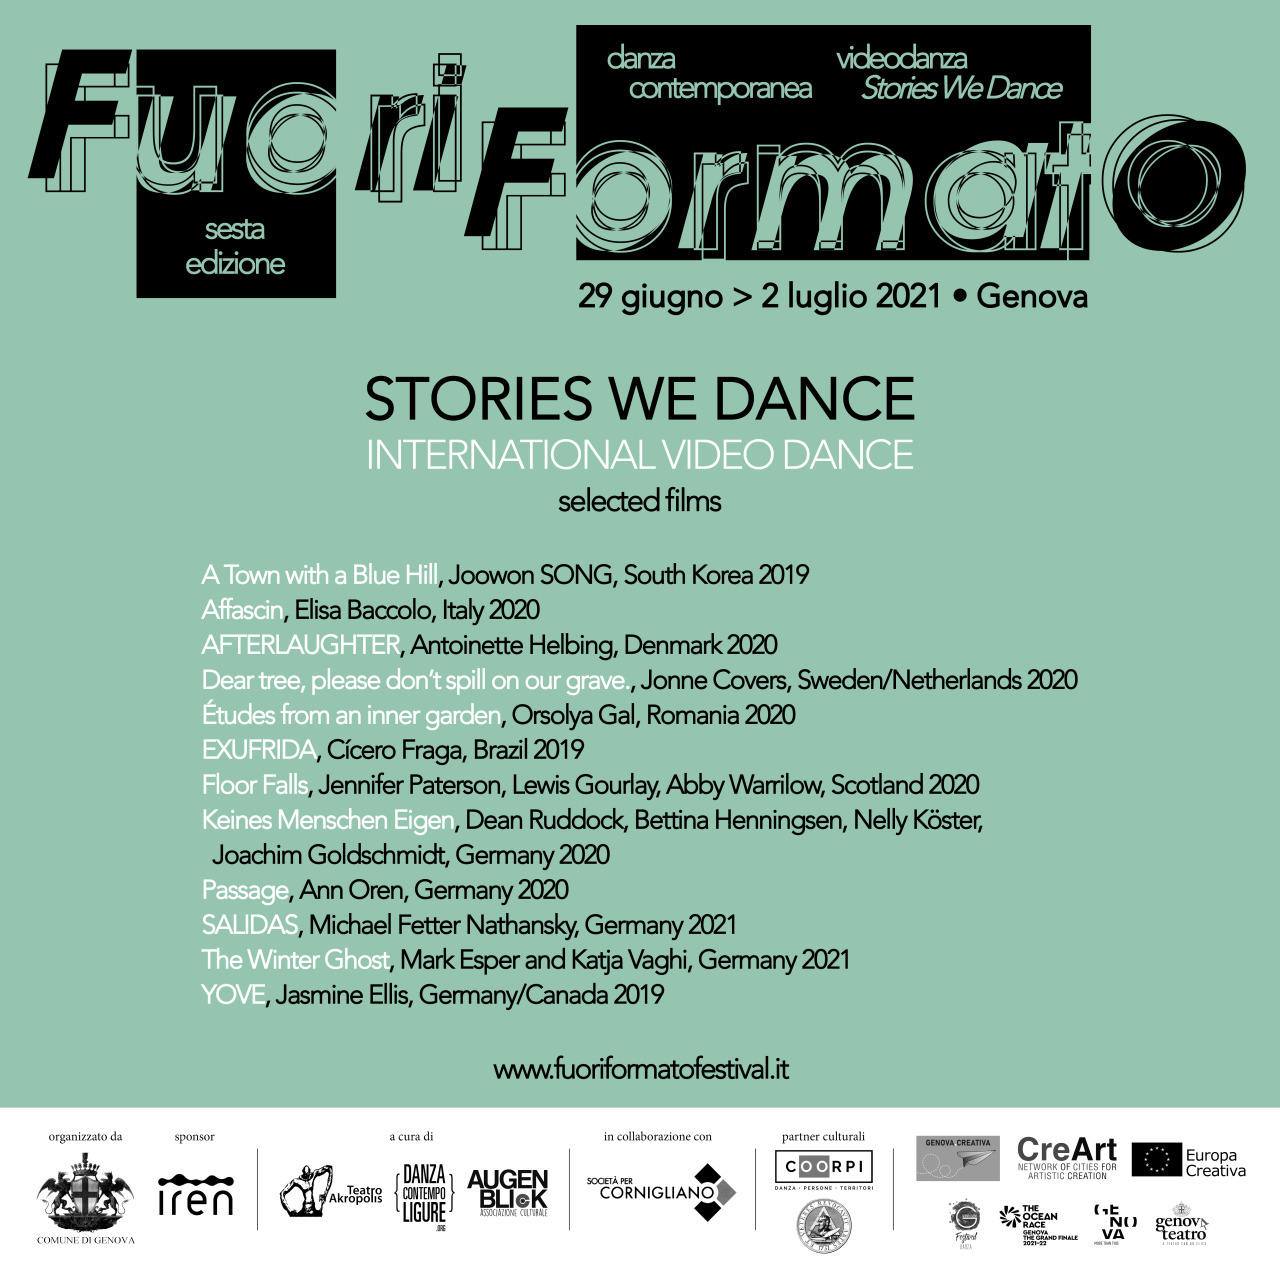 FuoriFormato - Stories We Dance 2021. Festival internazionale di danza